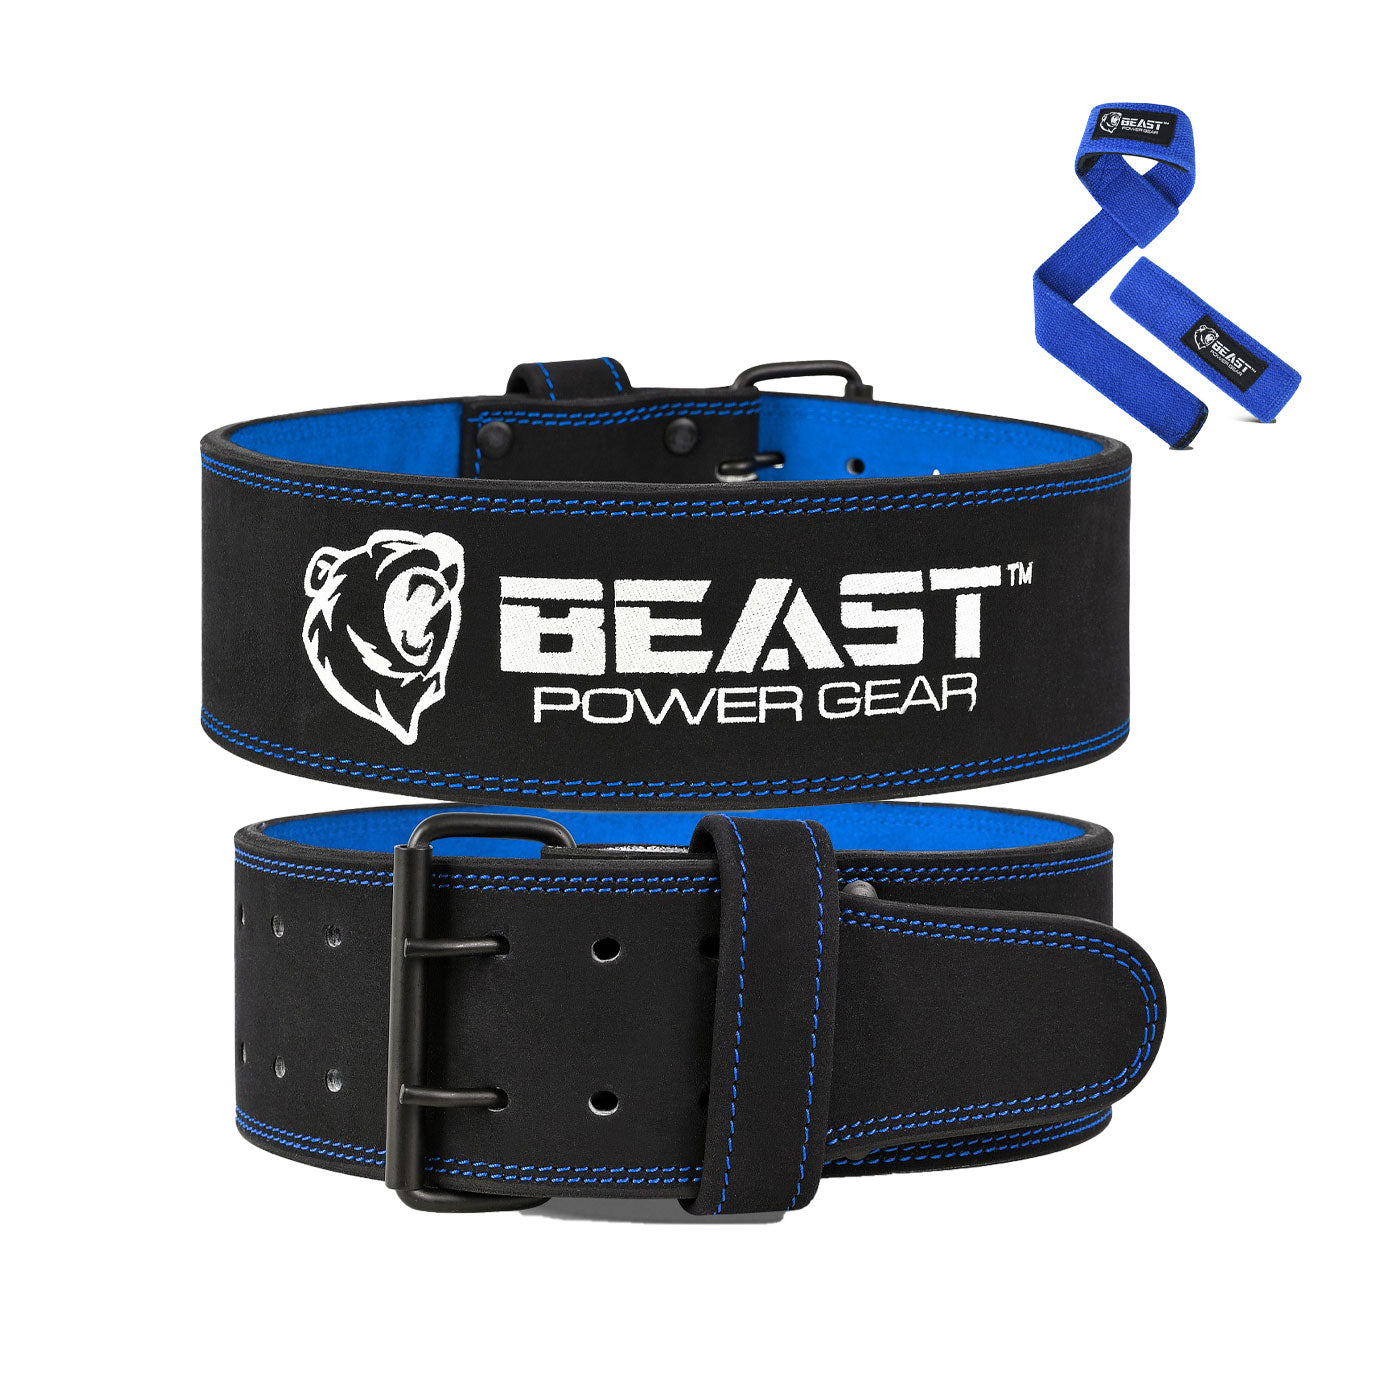 http://www.beastpowergear.com/cdn/shop/products/Power-belt-Blue.jpg?v=1653324909